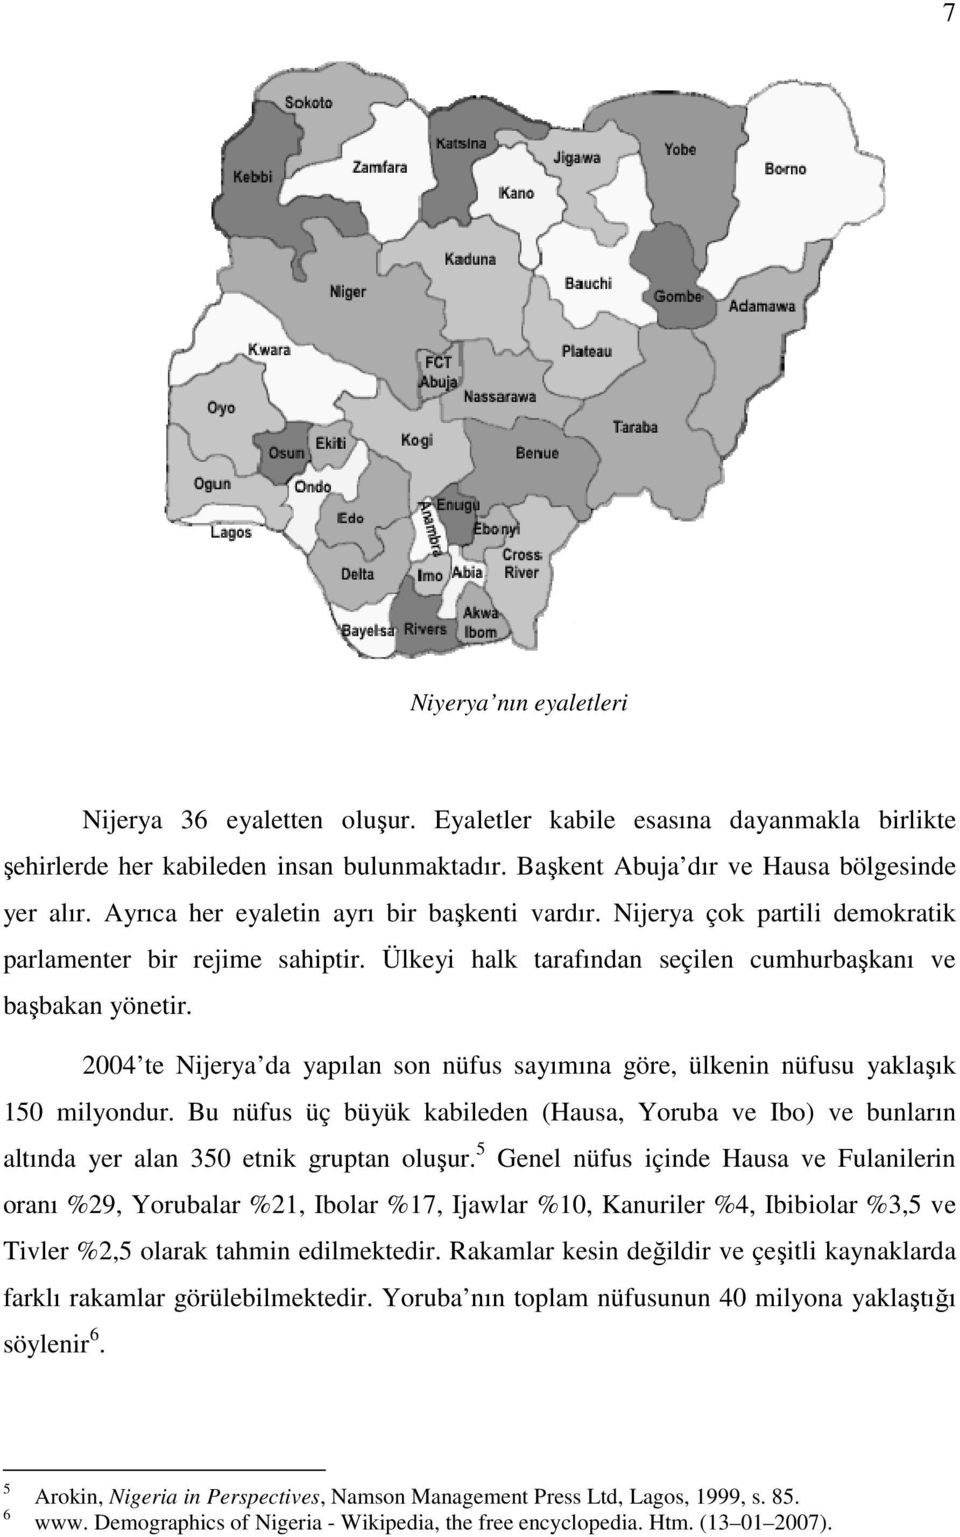 2004 te Nijerya da yapılan son nüfus sayımına göre, ülkenin nüfusu yaklaşık 150 milyondur. Bu nüfus üç büyük kabileden (Hausa, Yoruba ve Ibo) ve bunların altında yer alan 350 etnik gruptan oluşur.